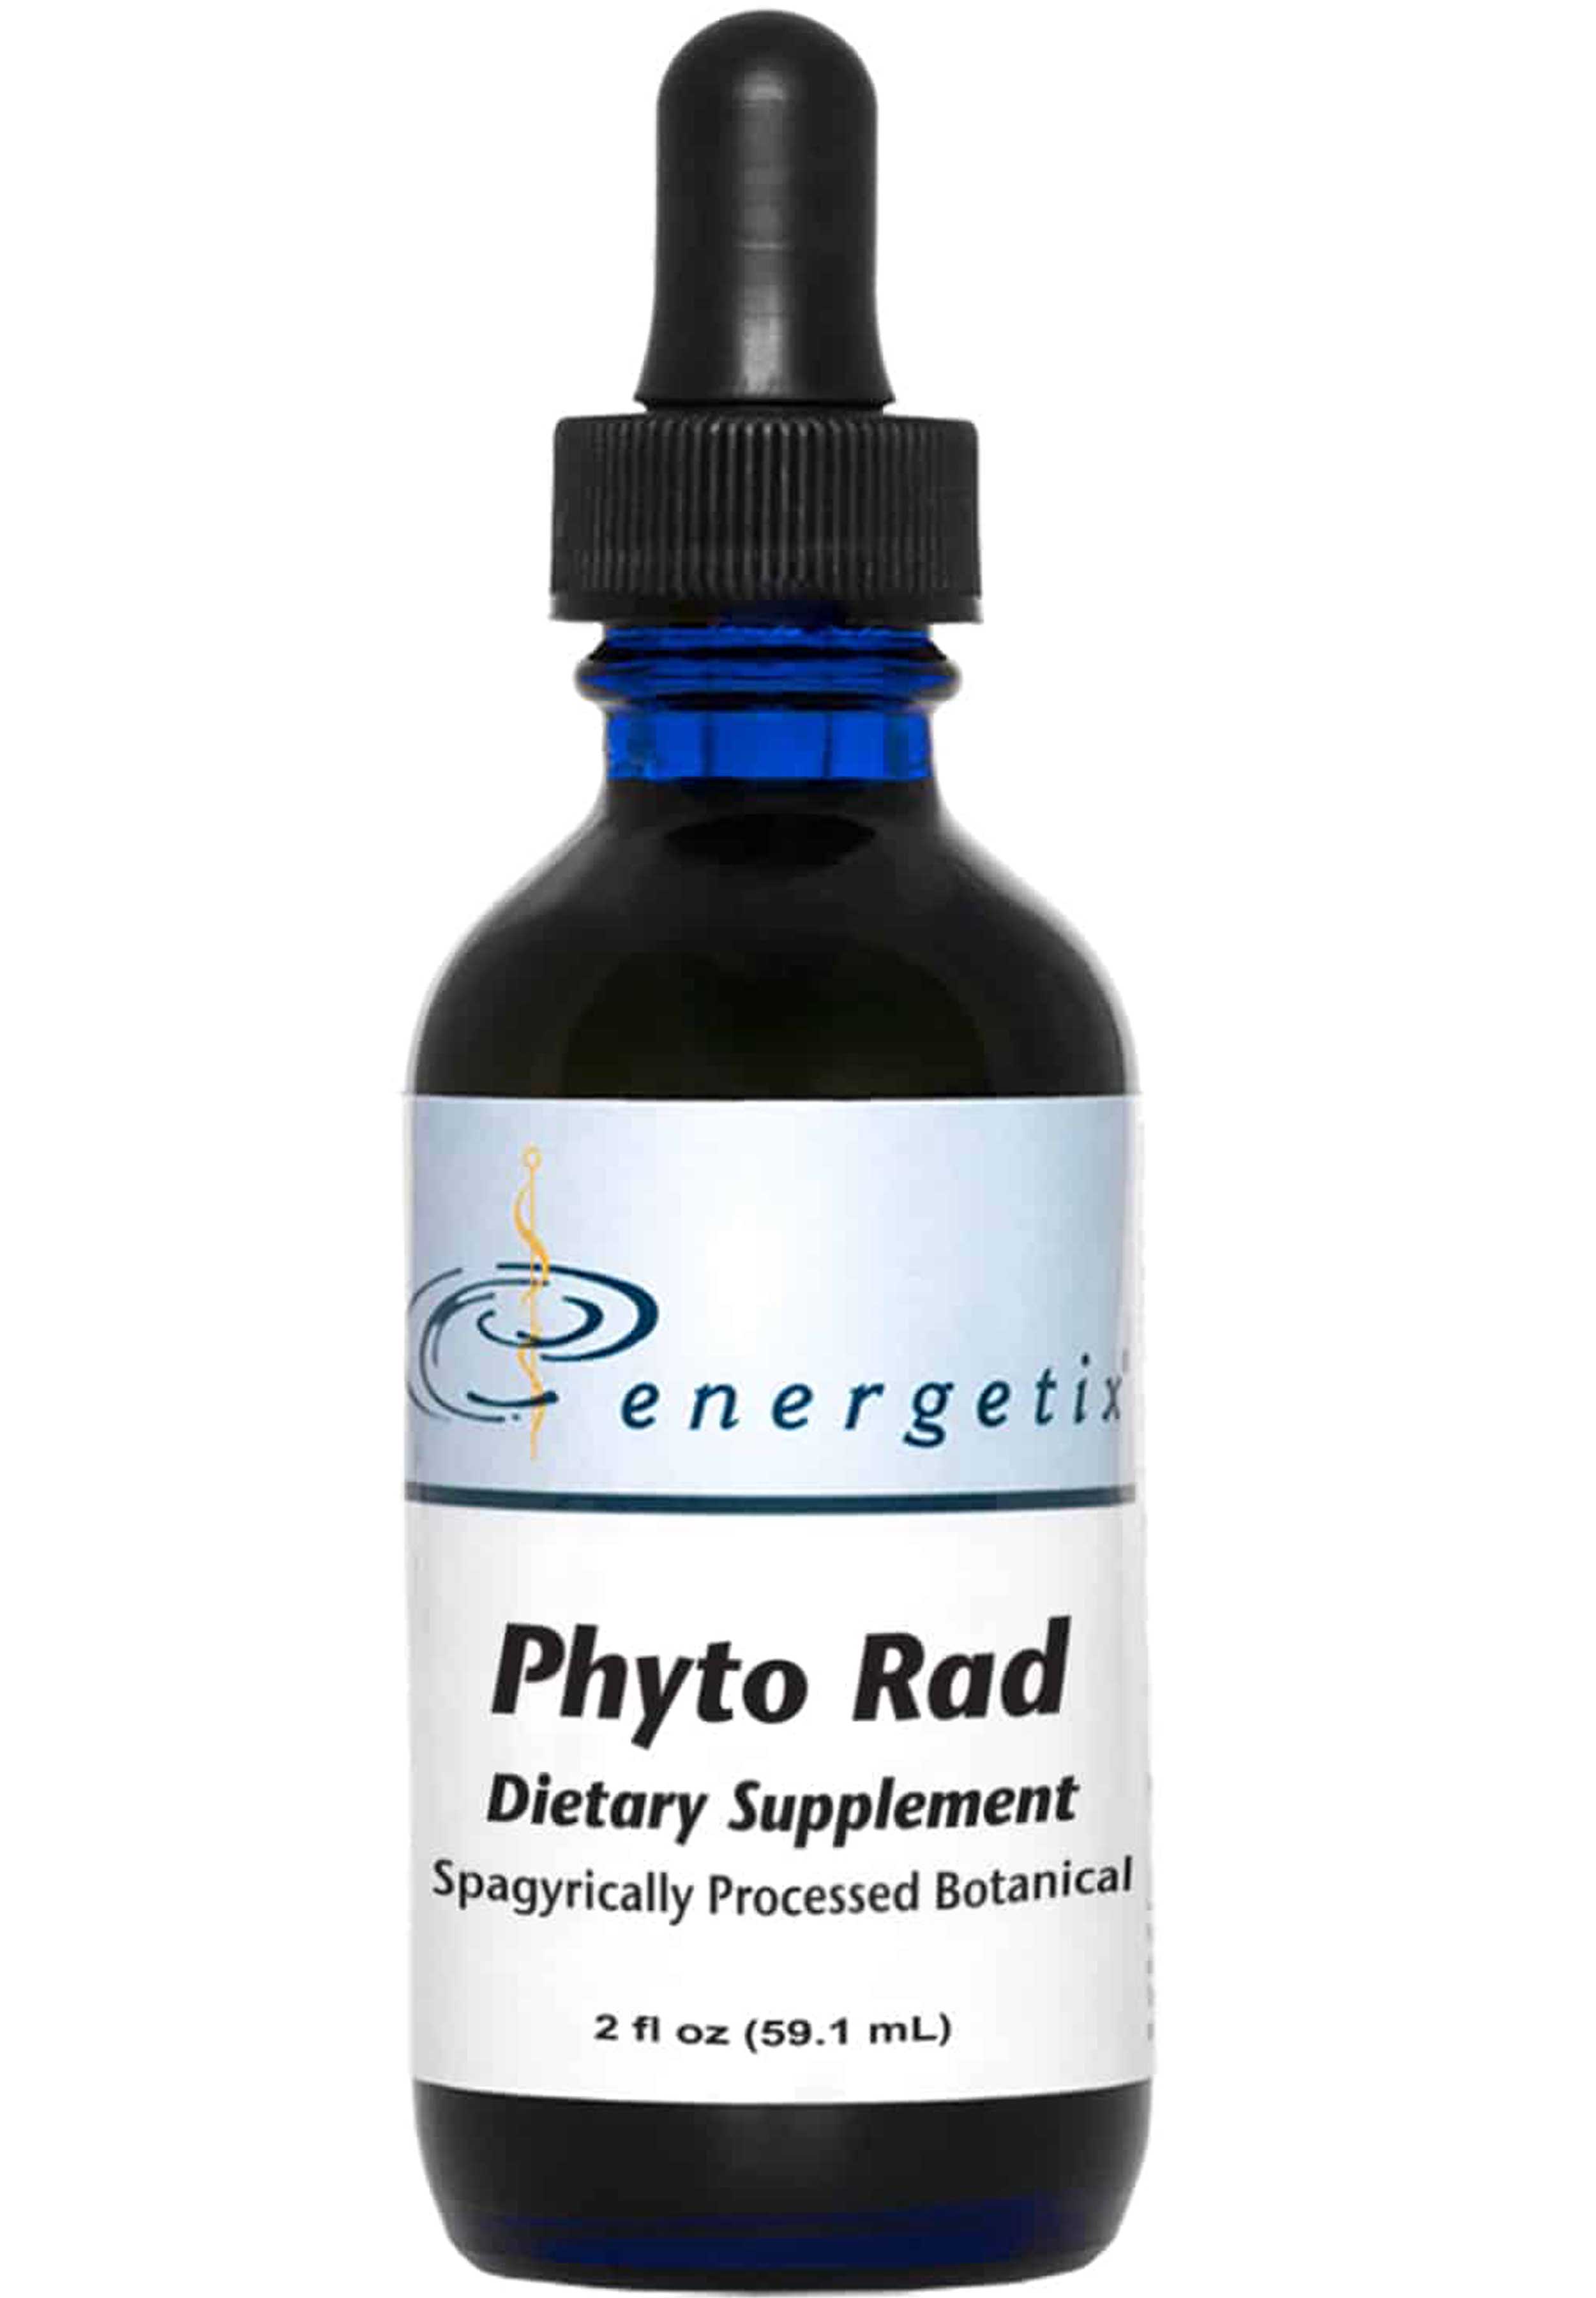 Energetix Phyto Rad